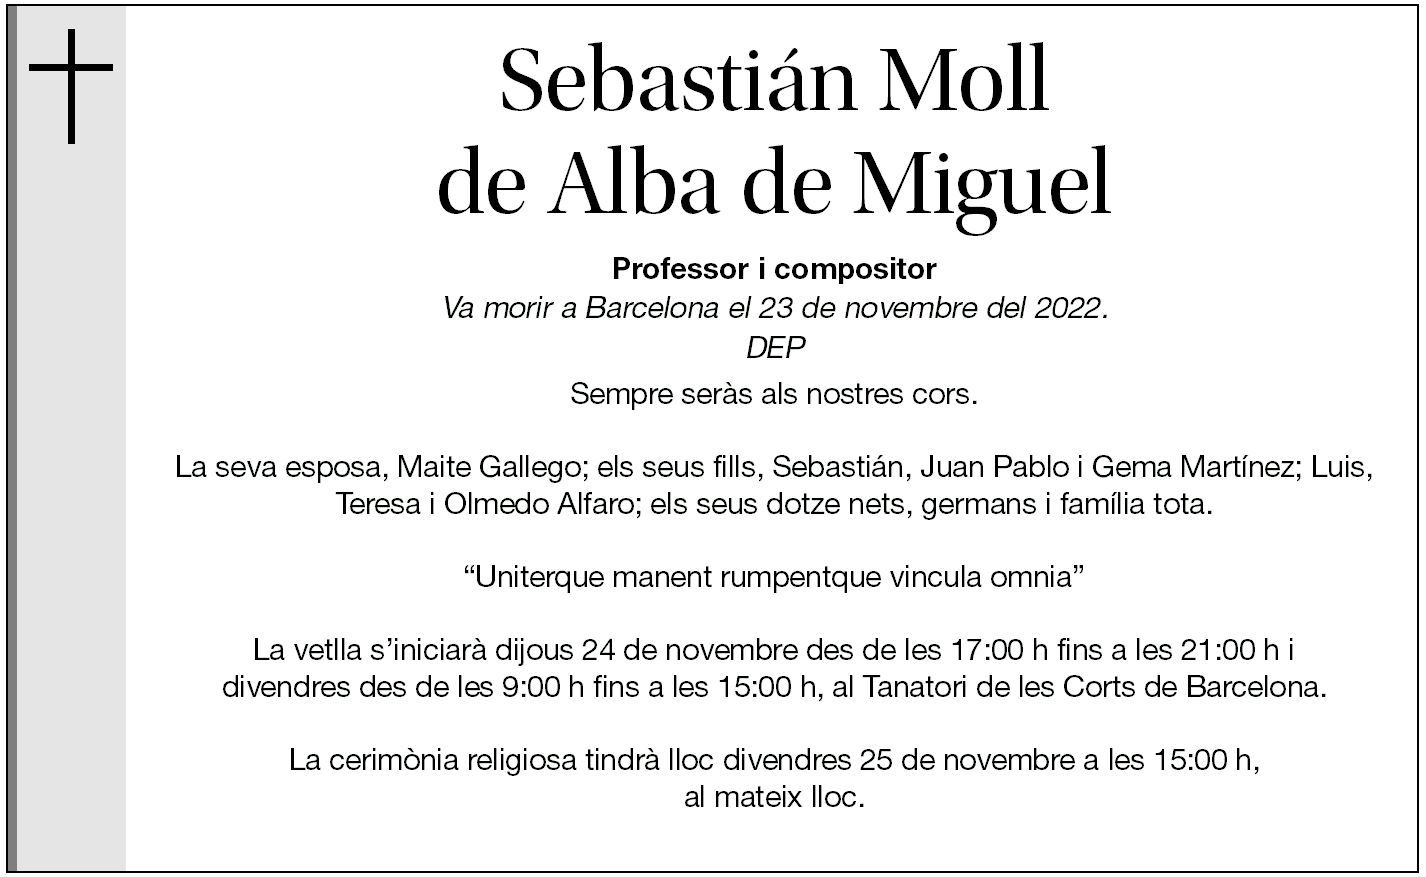 Sebastián Moll de Alba de Miguel